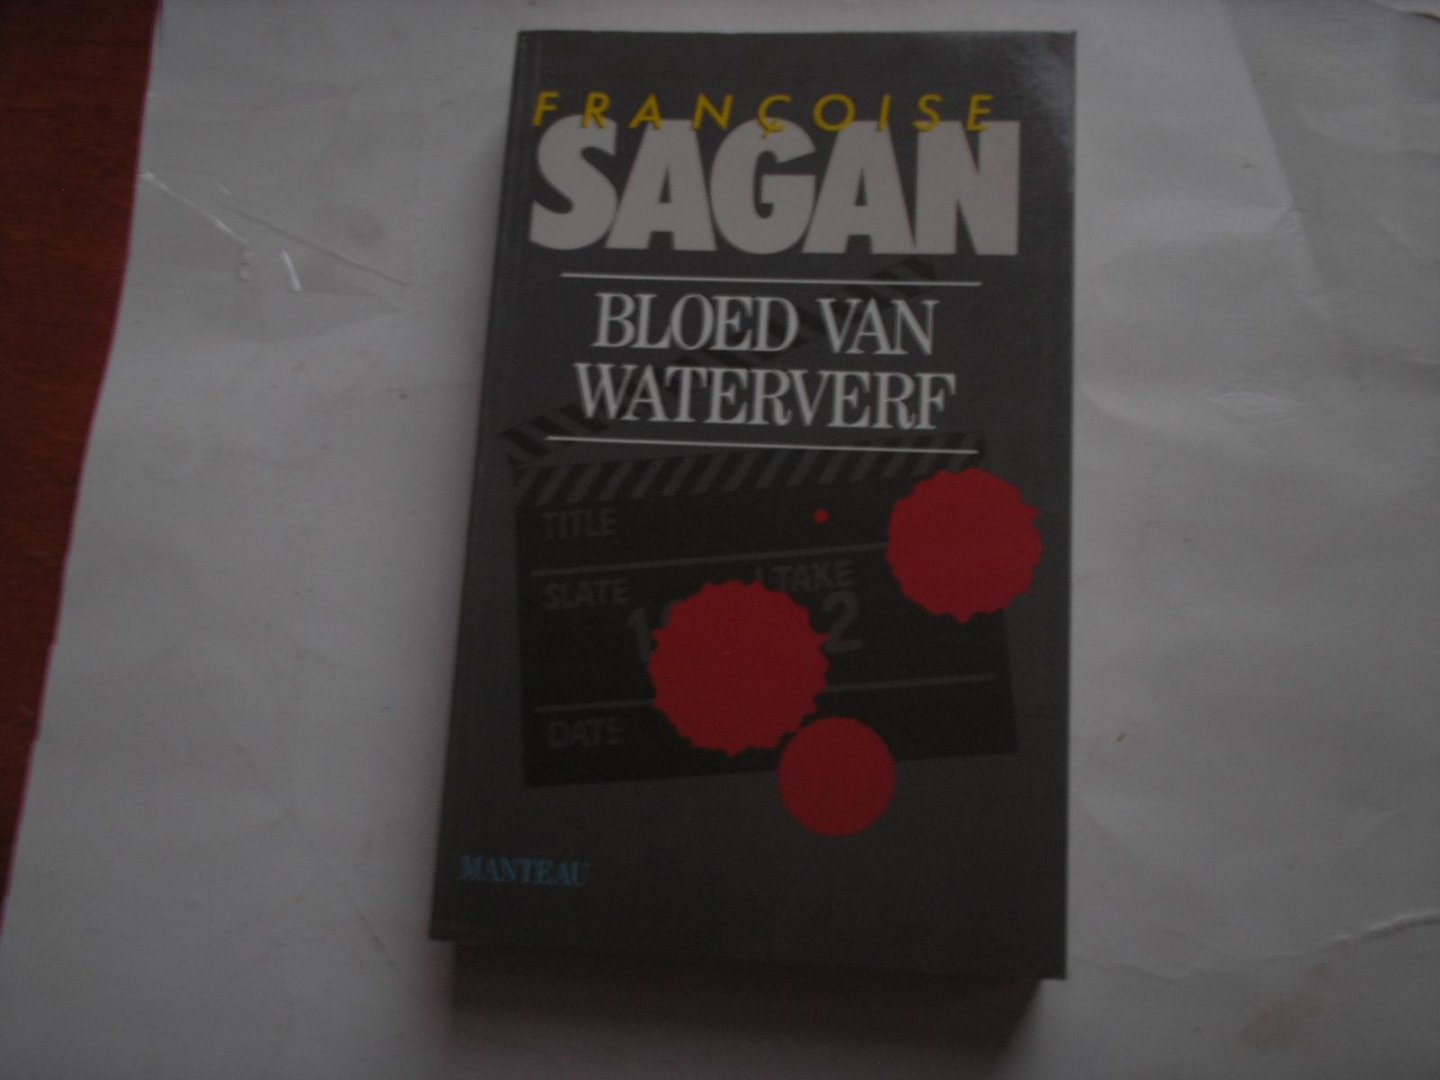 Sagan, Francoise - Bloed van Waterverf